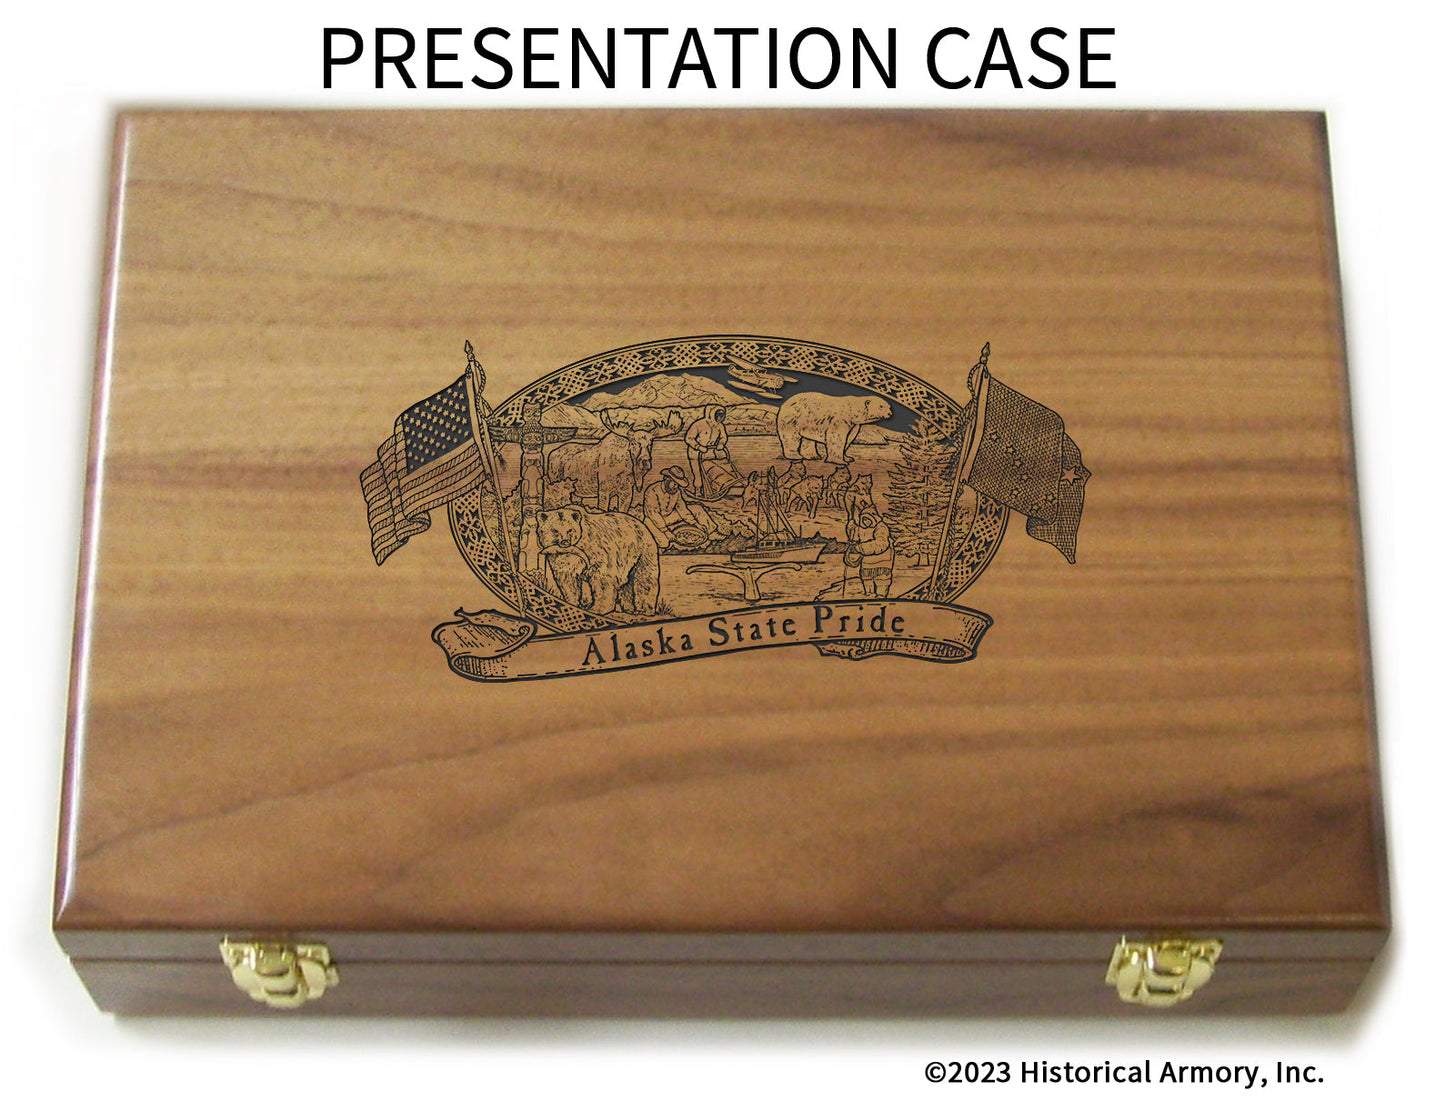 Alaska State Pride Limited Edition Engraved 1911 Presentation Case